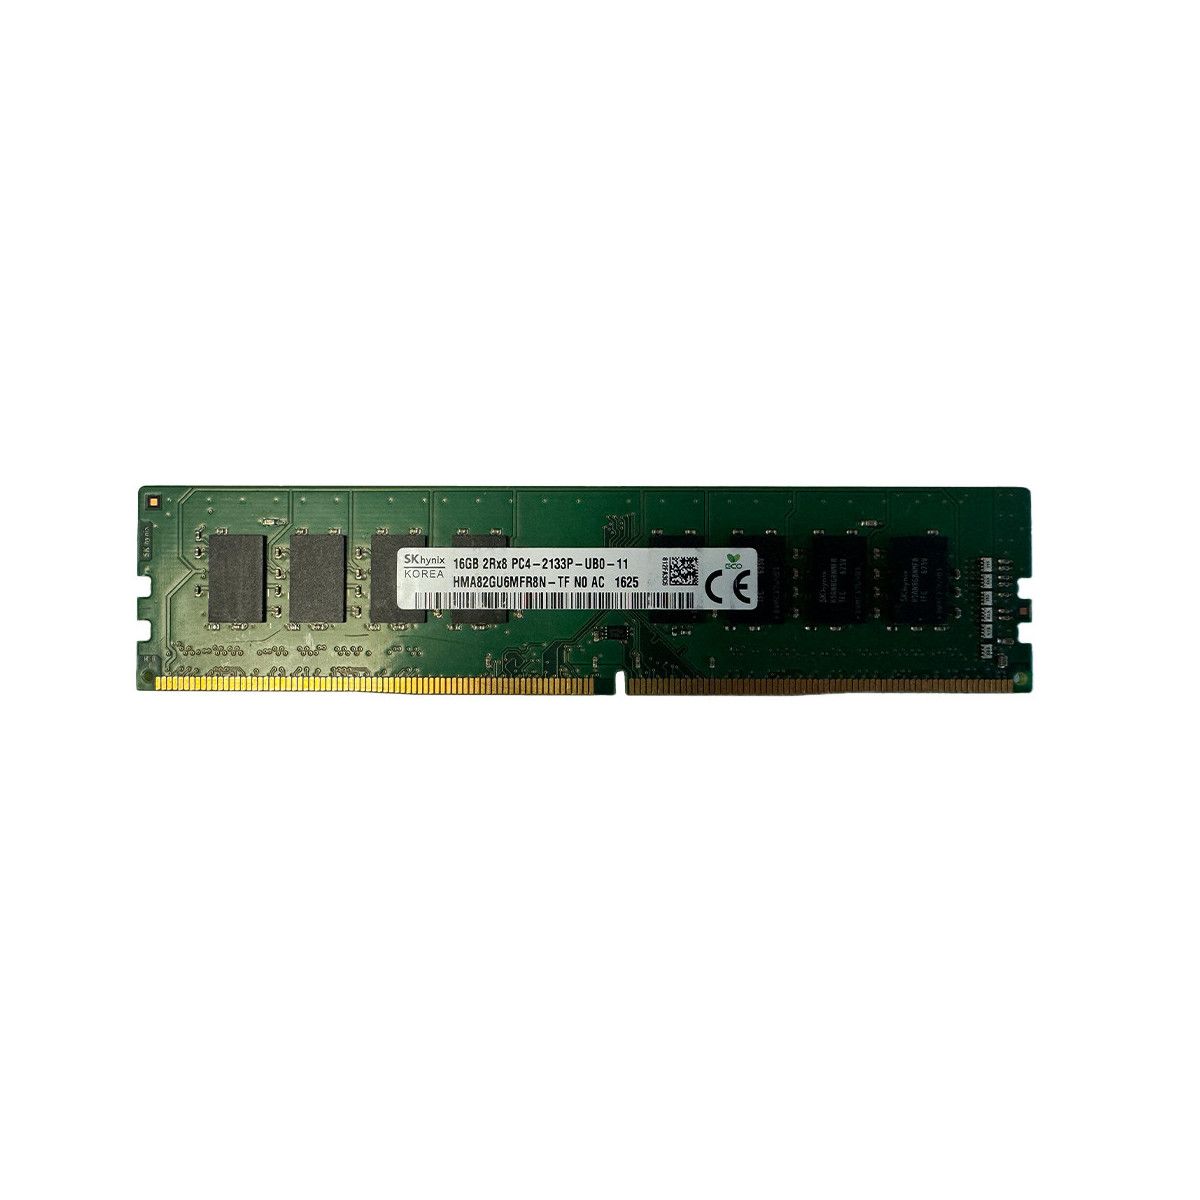 805671-B21-MS -NO- Memstar 1x 16GB DDR4-2133 Unbuffered UDIMM